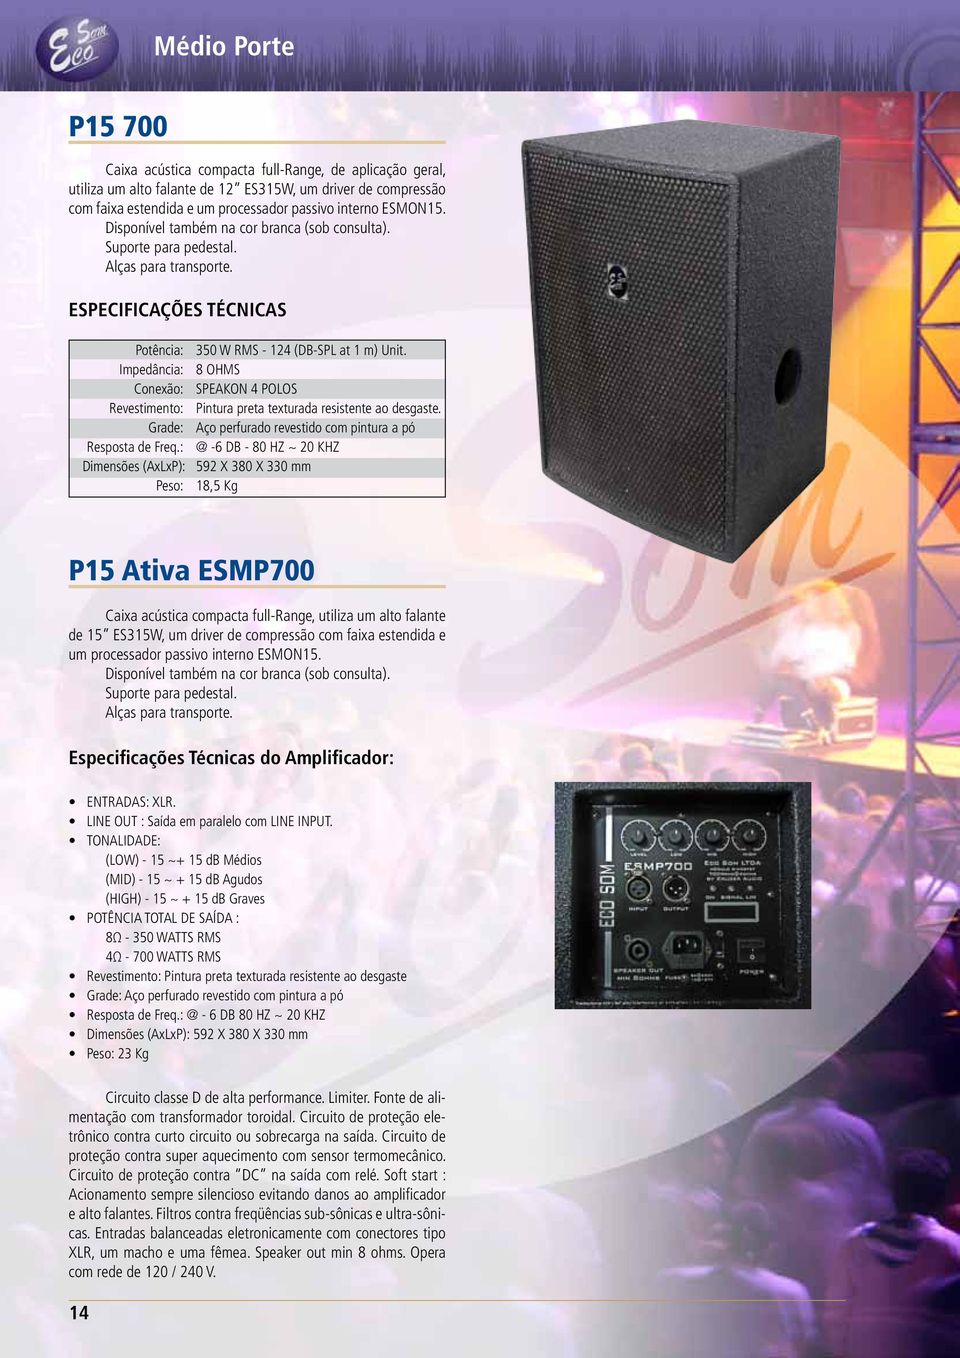 : @ -6 DB - 80 HZ ~ 20 KHZ Dimensões (AxLxP): 592 X 380 X 330 mm Peso: 18,5 Kg P15 Ativa ESMP700 Caixa acústica compacta full-range, utiliza um alto falante de 15 ES315W, um driver de compressão com